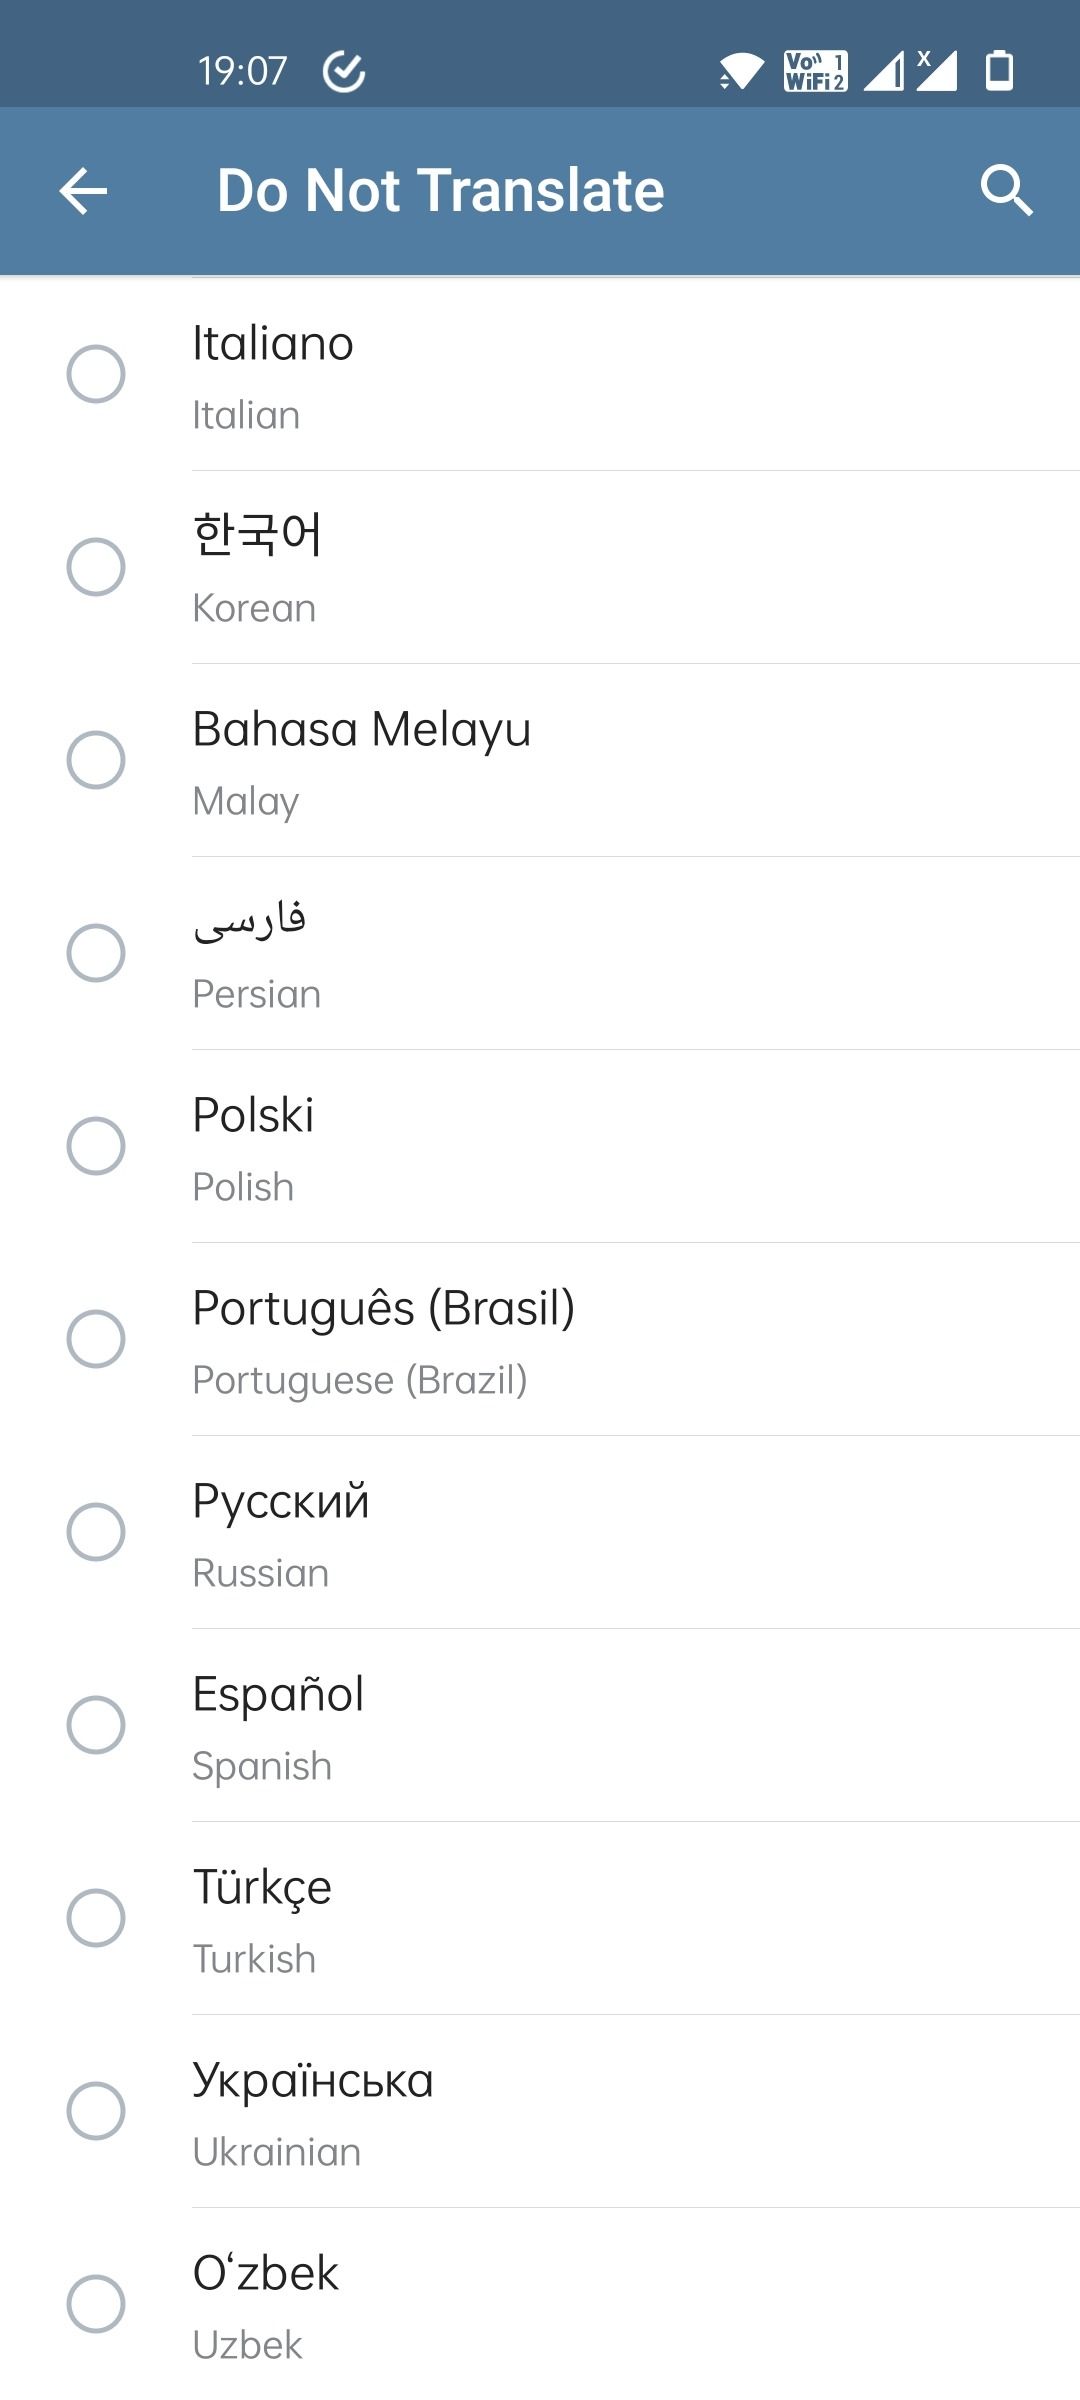 Telegram semua opsi bahasa terjemahan